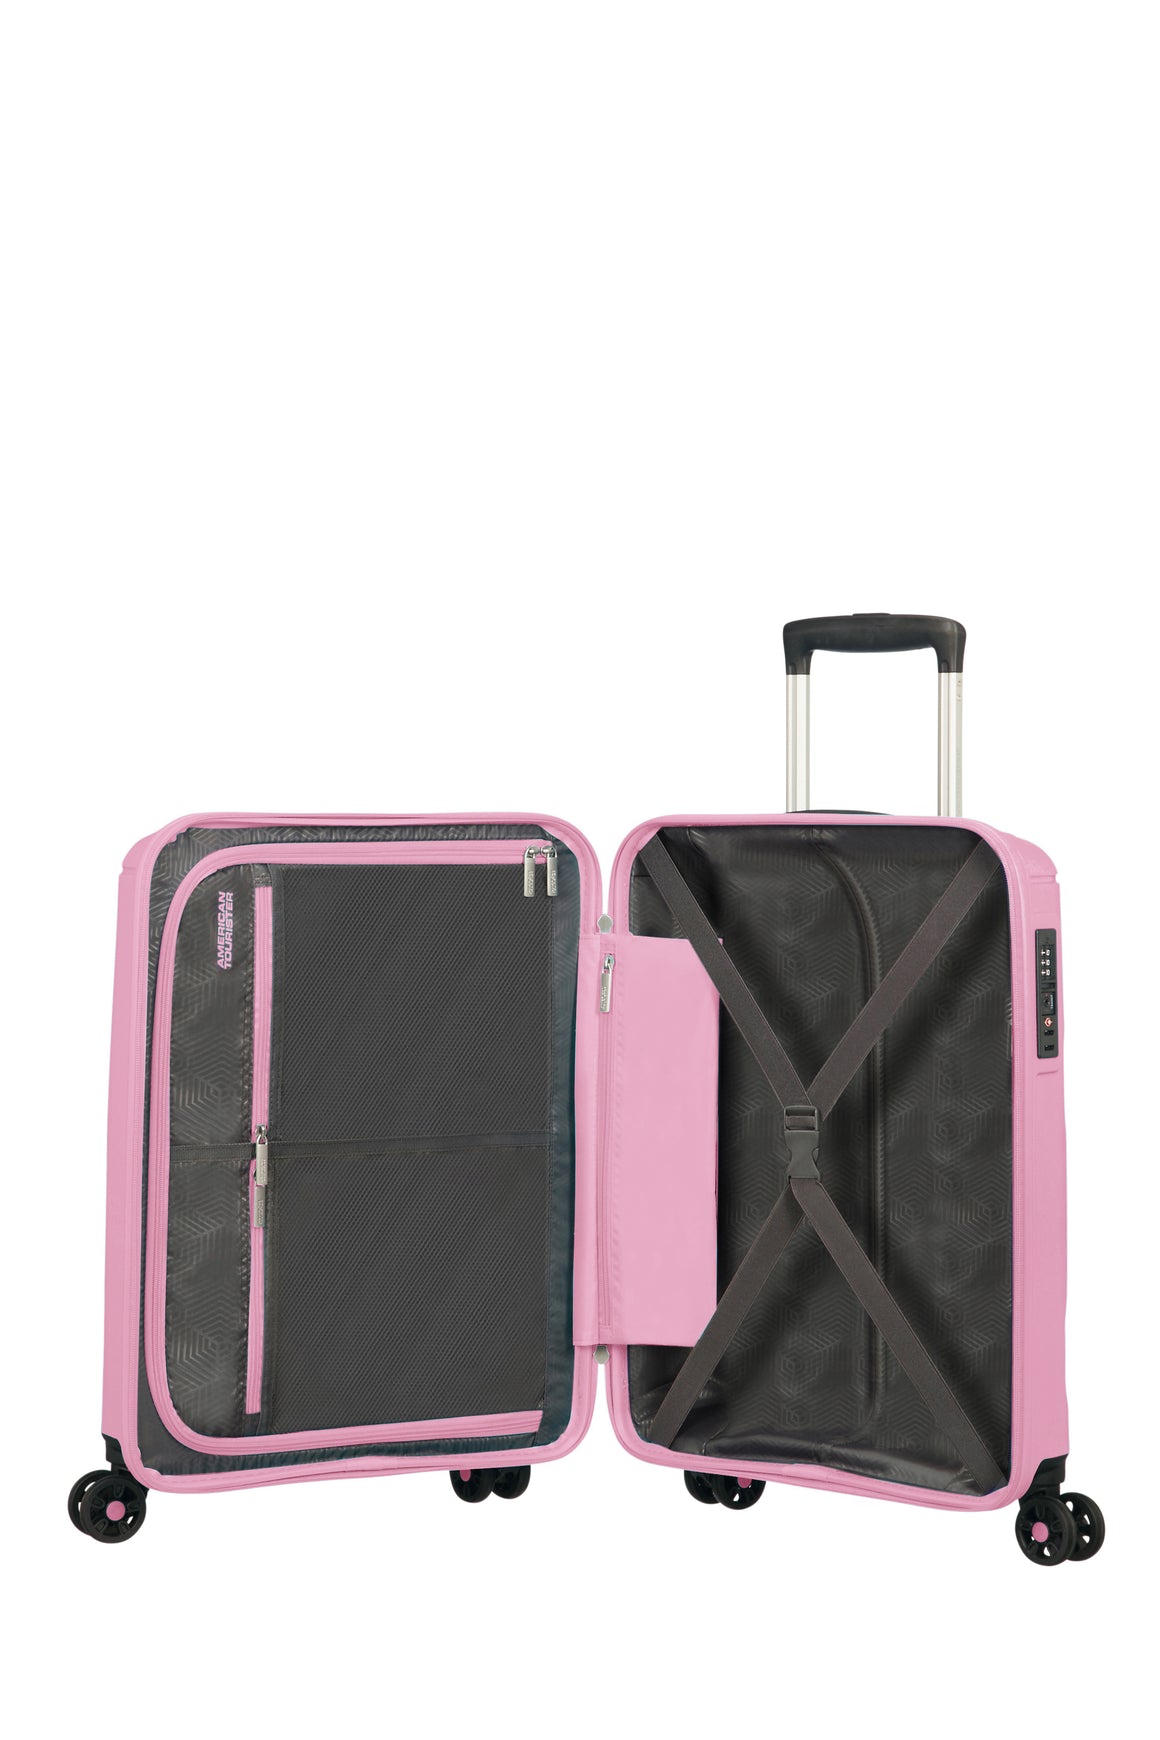 American Tourister Sunside Kabin Koffert 55 cm/ 35 Liter Pink Gelato